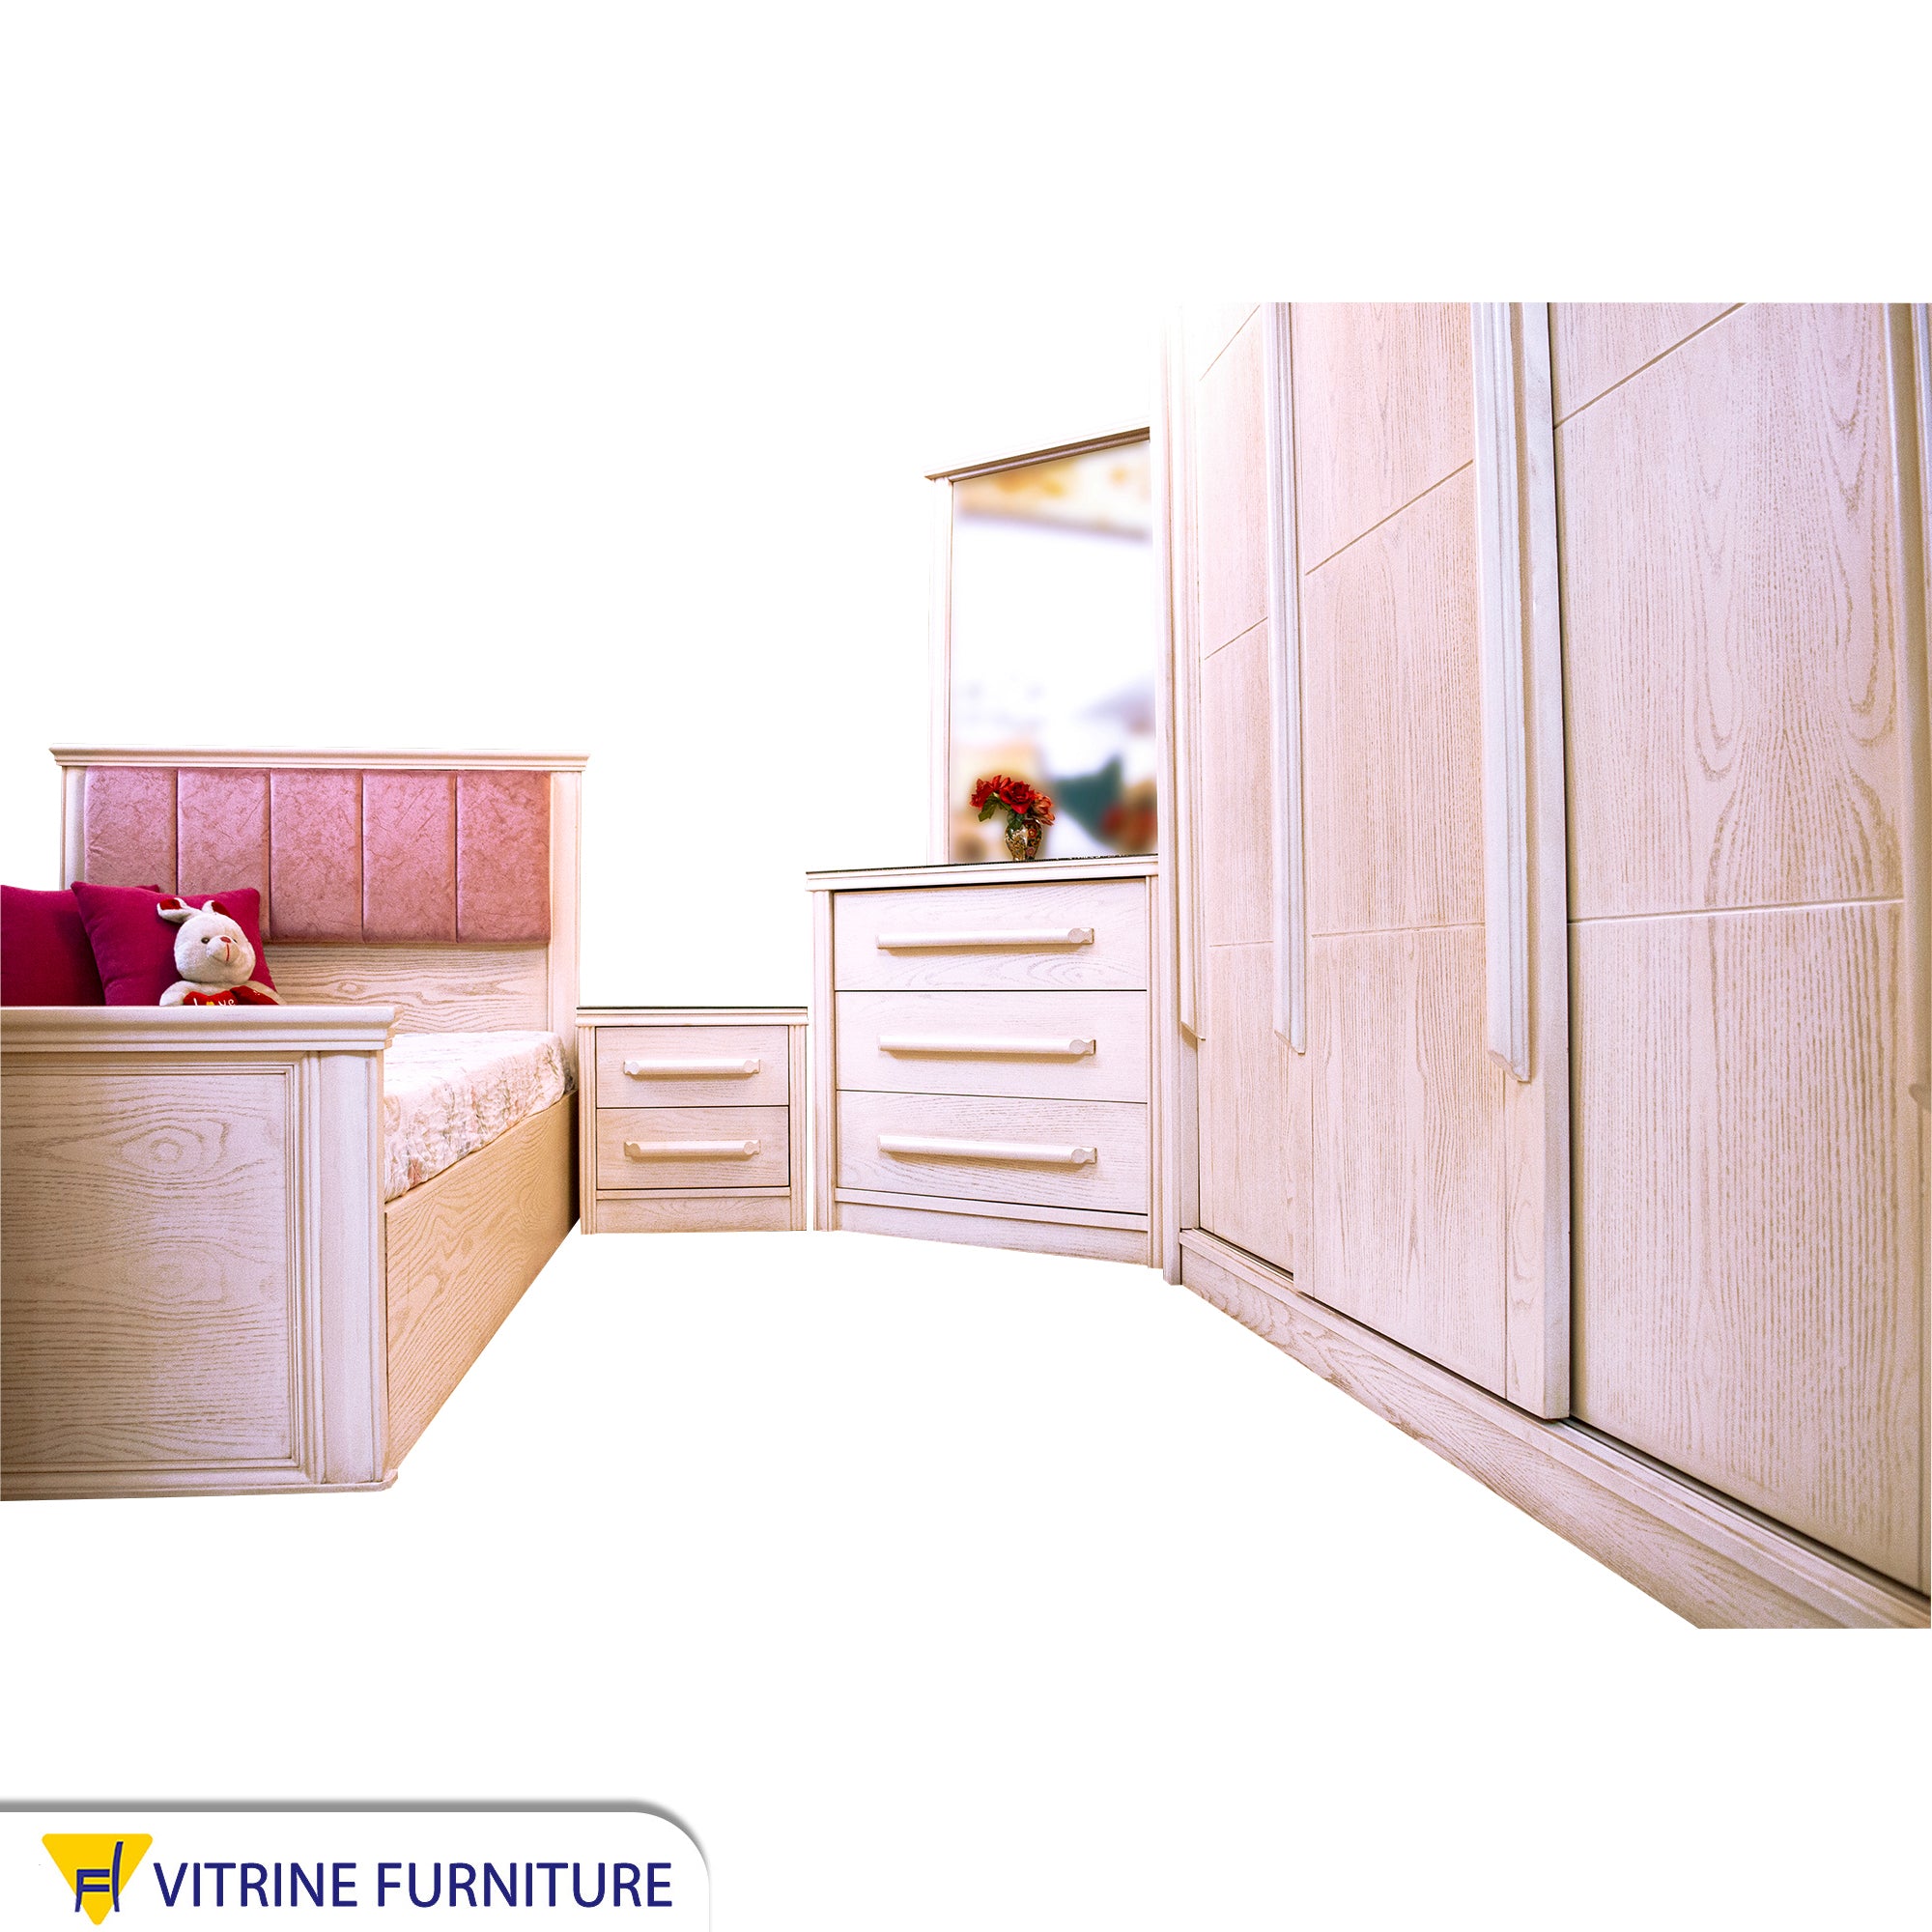 Junior bedroom with beige wood grain